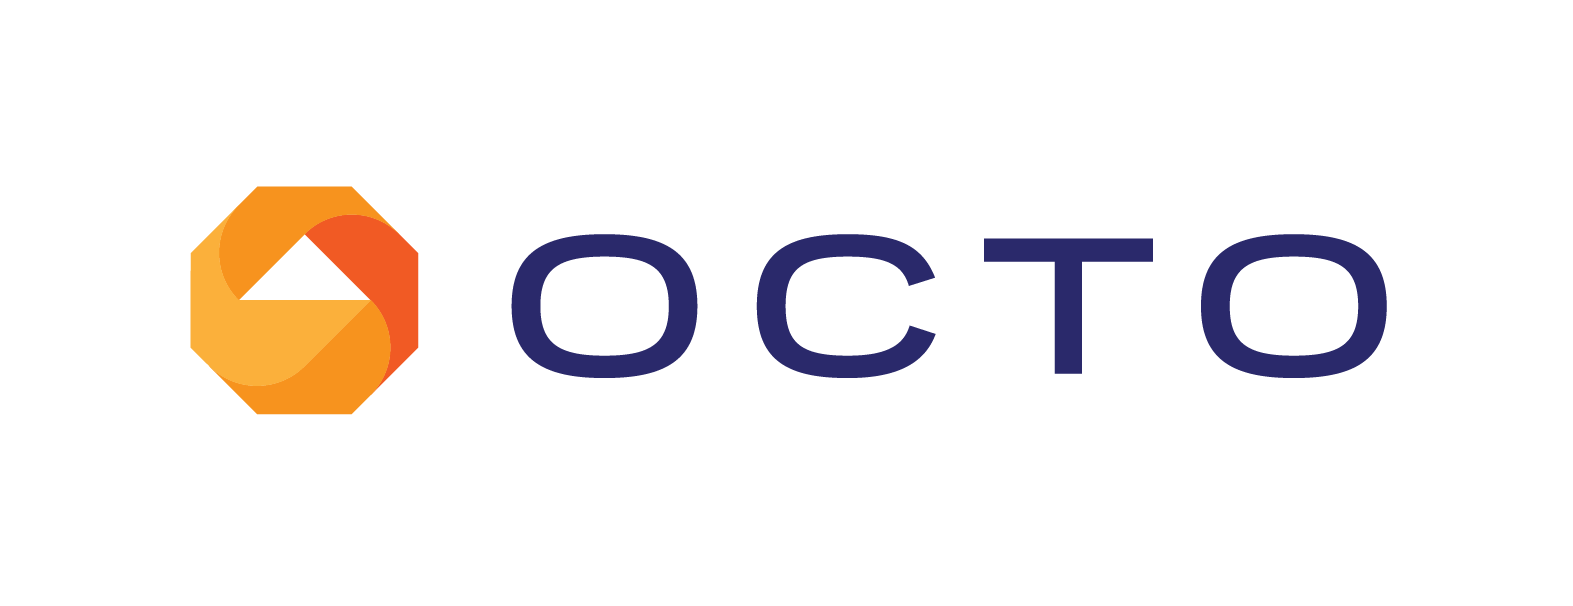 Octo Company Logo